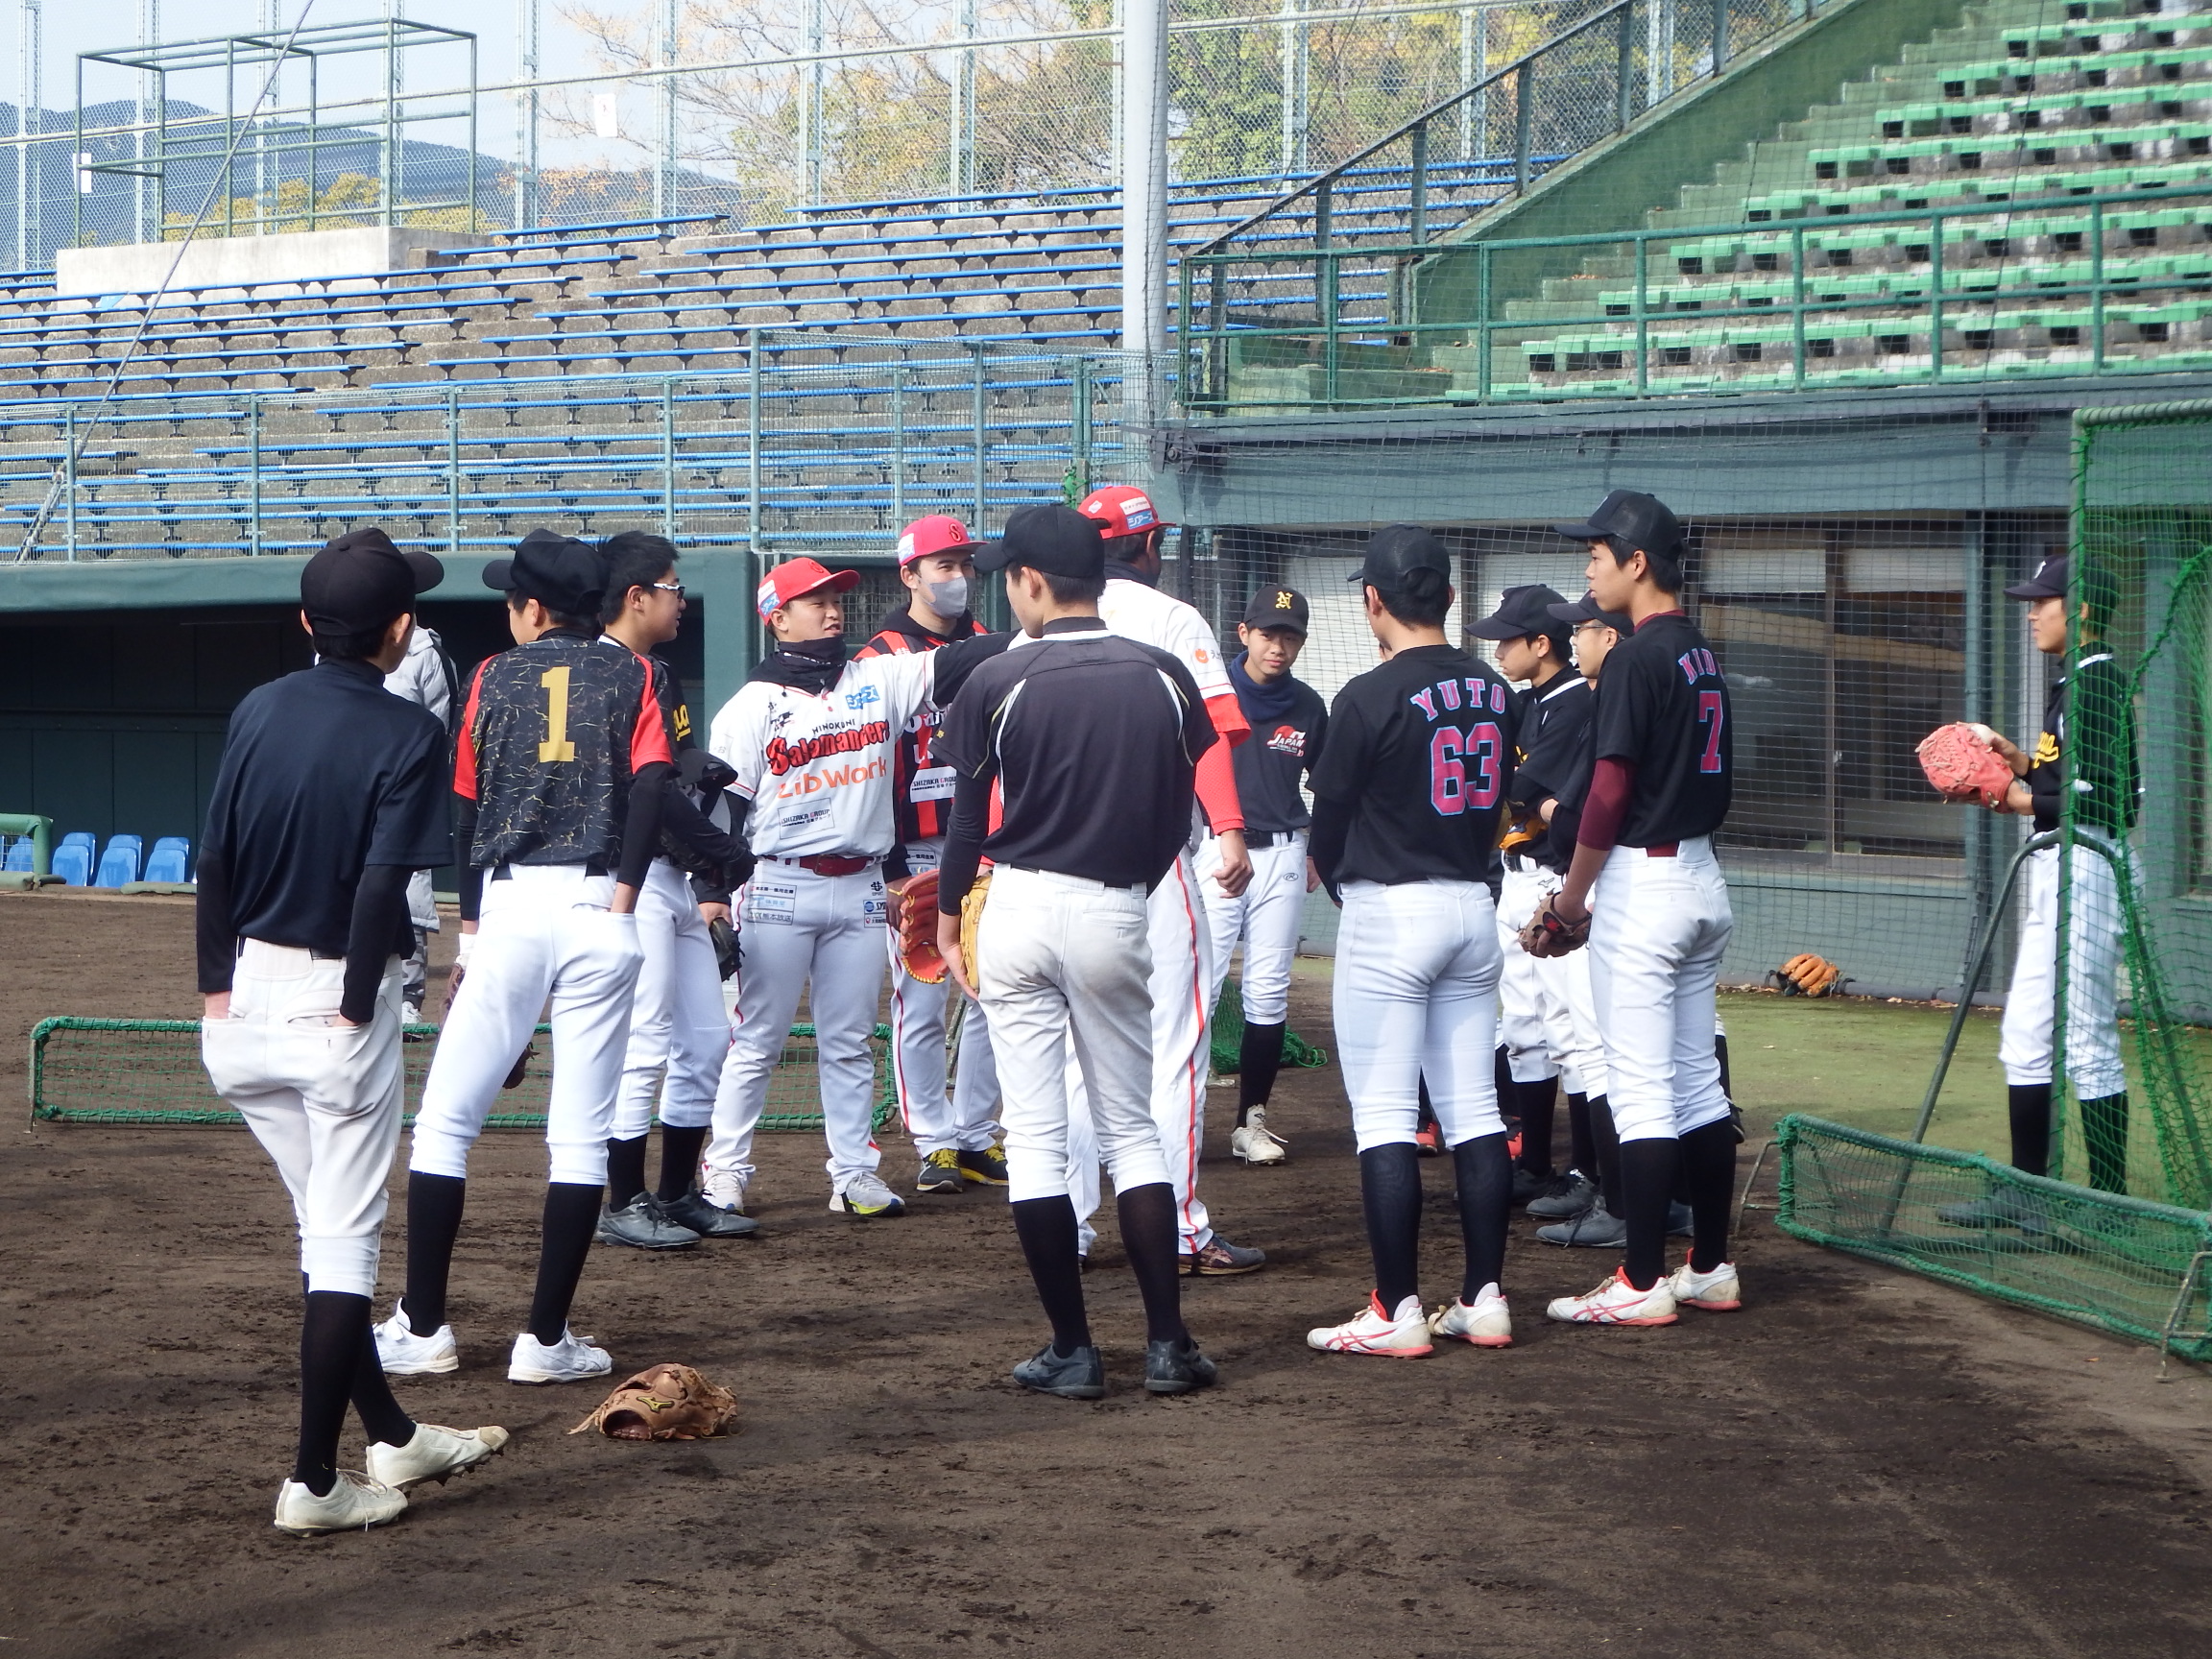 一般財団法人熊本県スポーツ振興事業団は、県立の体育施設を管理運営し、県民の体育・スポーツの普及振興を図ることを目的として設立された組織です。